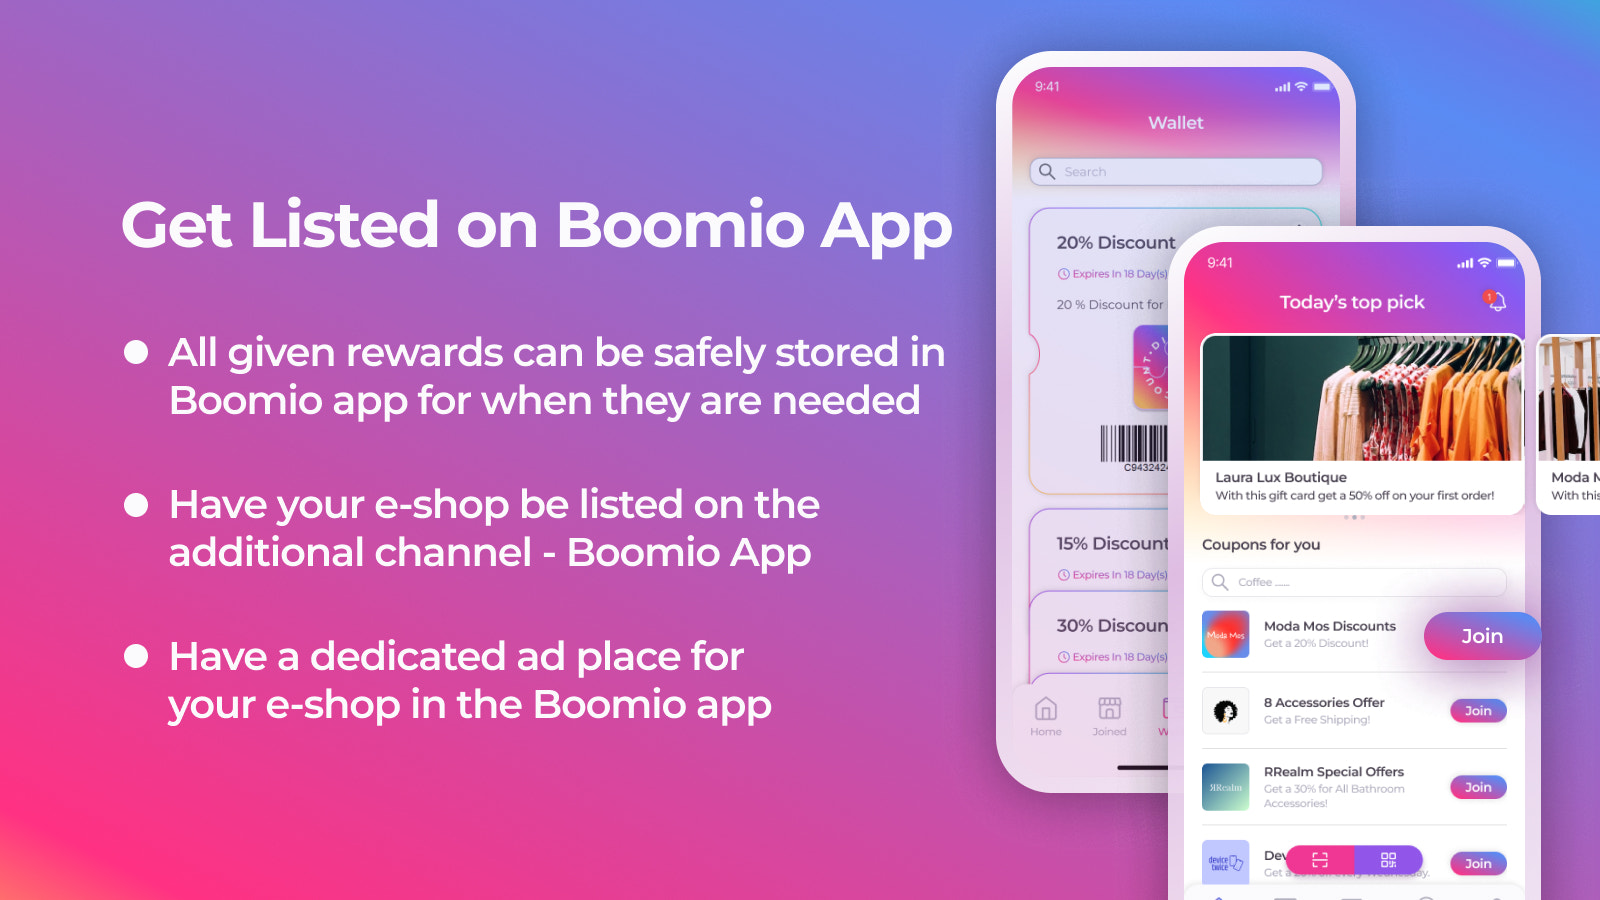 Få din e-butik listad på Boomio App.